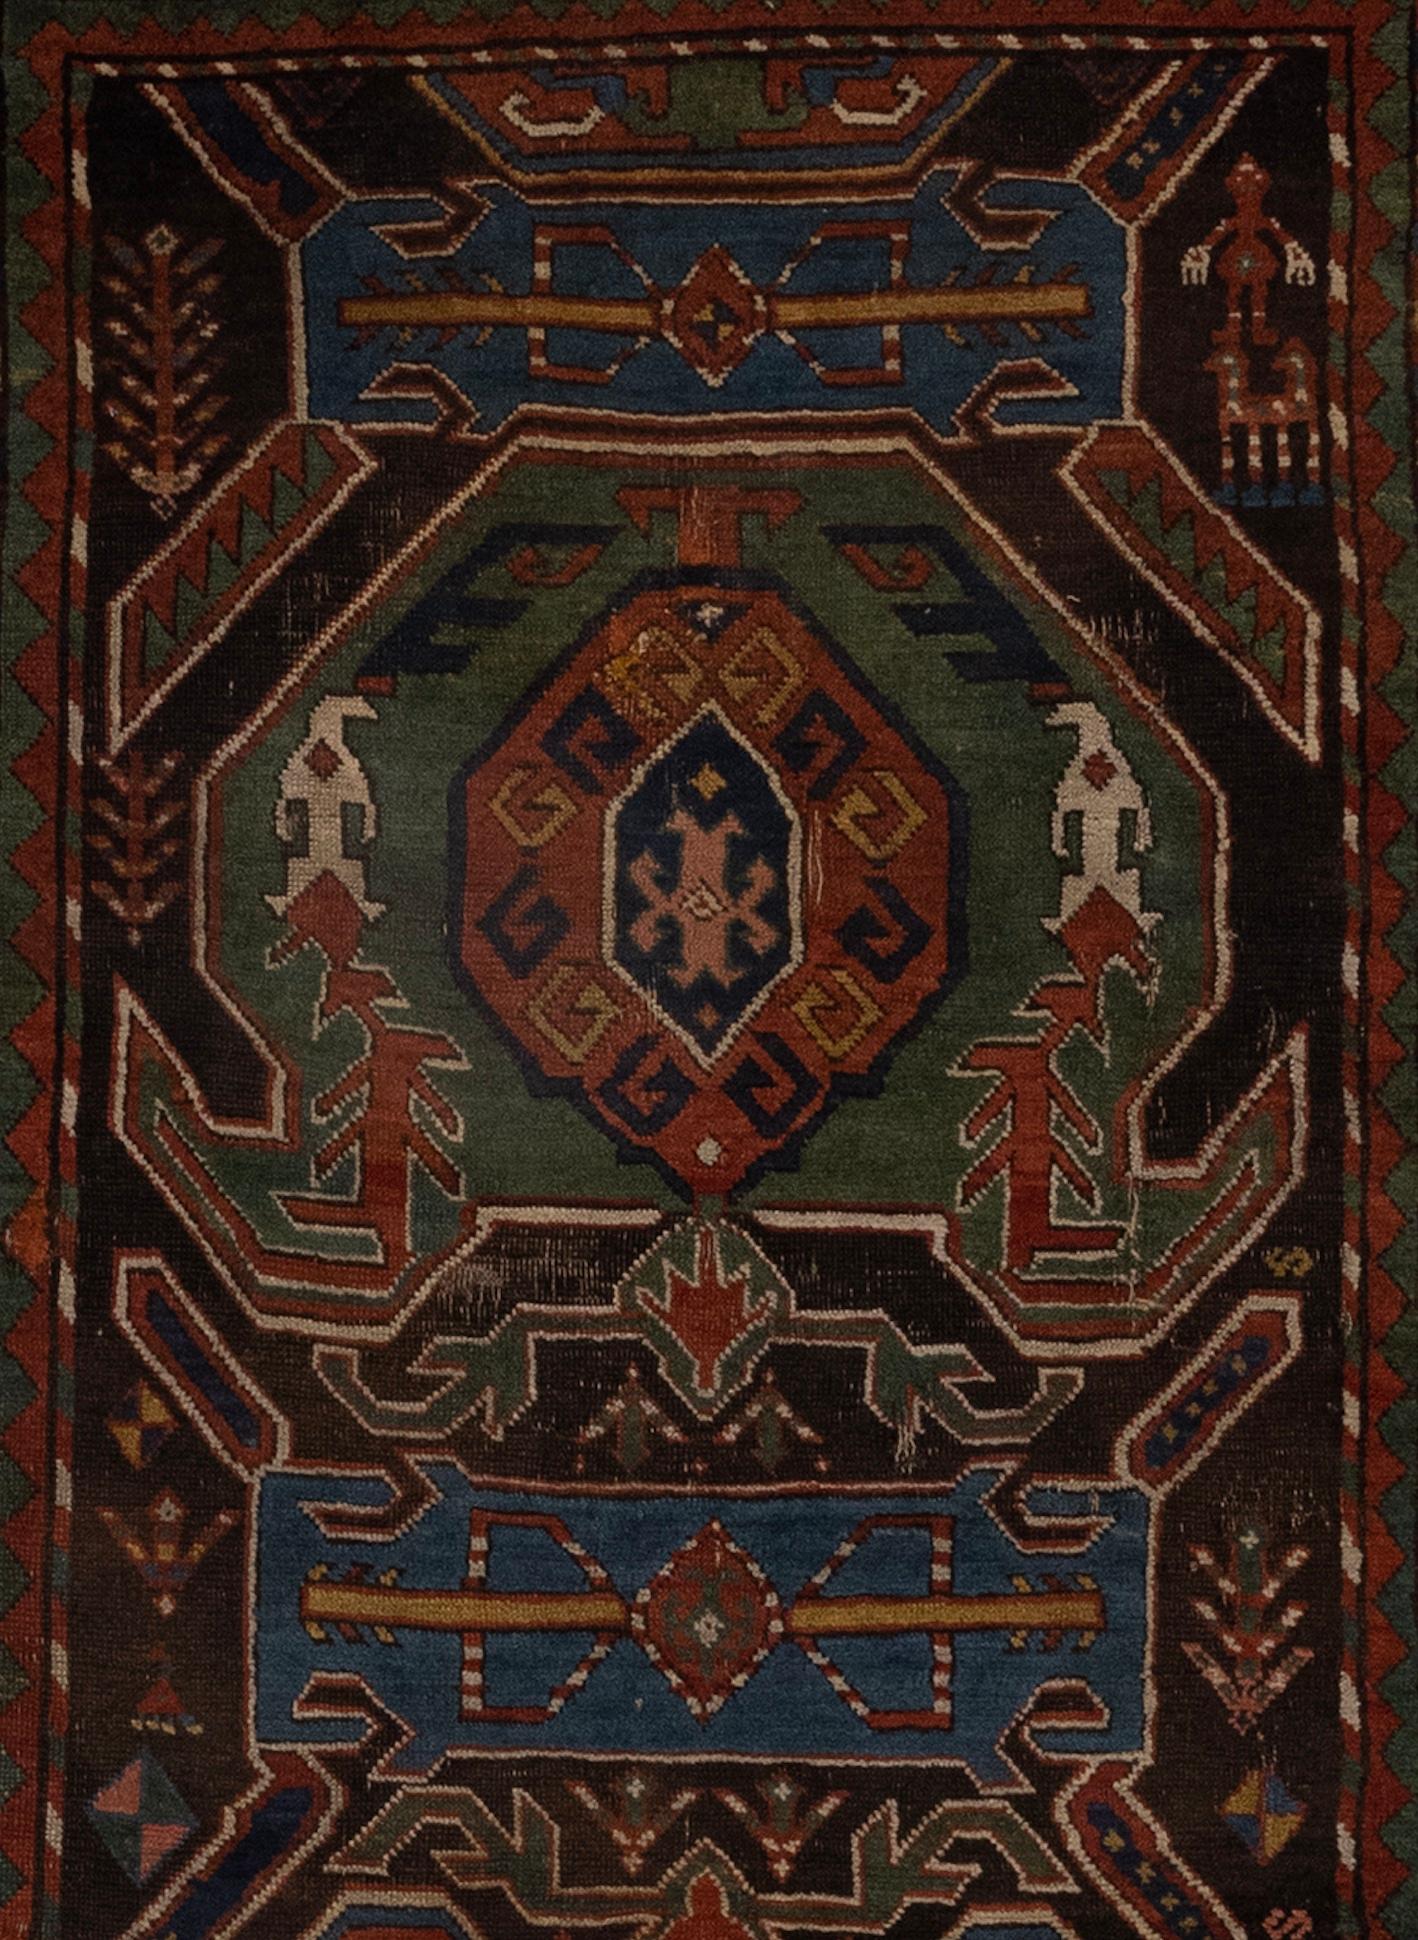 Der antike kaukasische Teppich in Rot- und Grüntönen ist ein fesselndes Meisterwerk, das das reiche kulturelle Erbe und die künstlerischen Traditionen der Kaukasusregion widerspiegelt. Dieser Teppich ist ein Zeugnis des handwerklichen Könnens